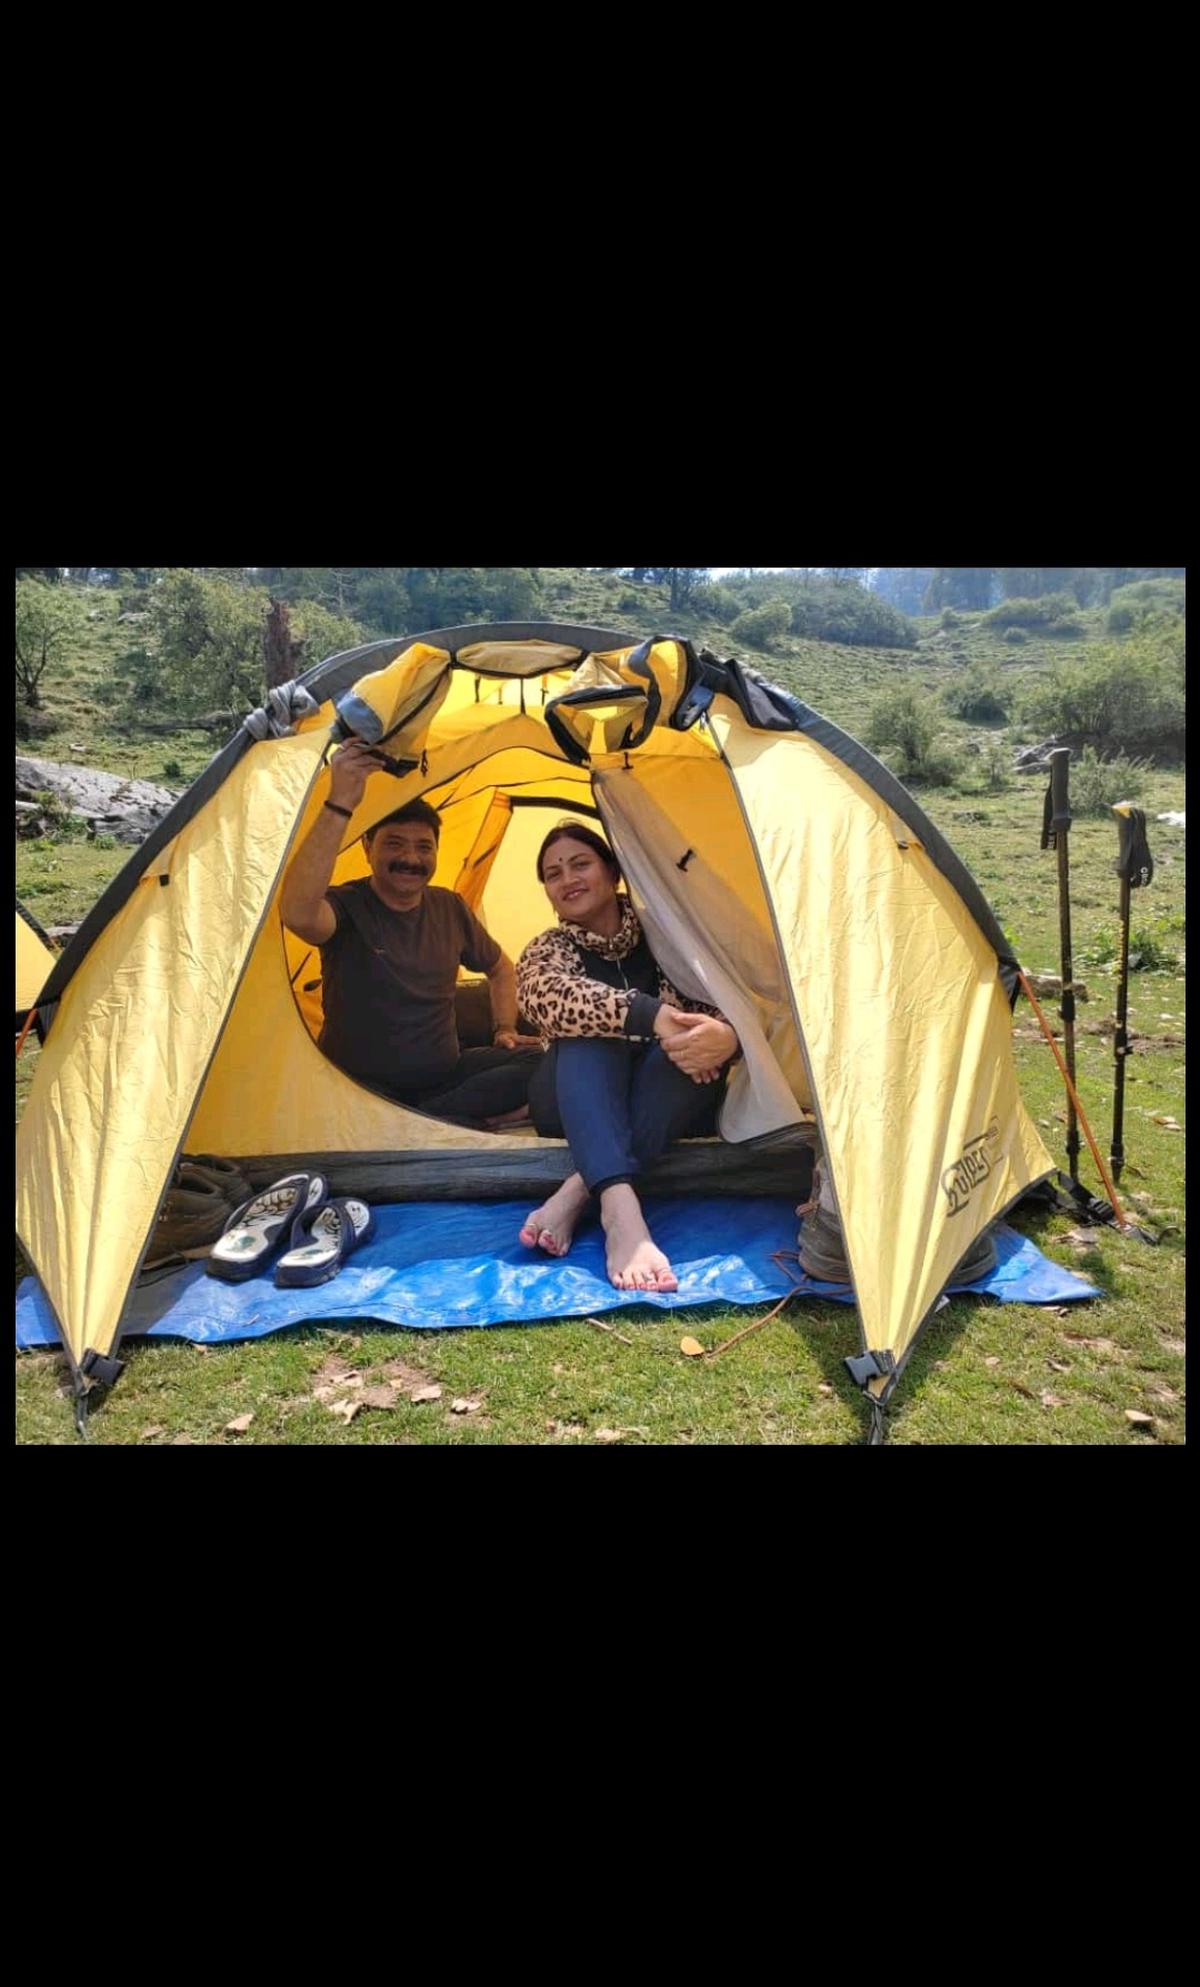 Priyanka Shukla at the camping site of Dayara Bugyal